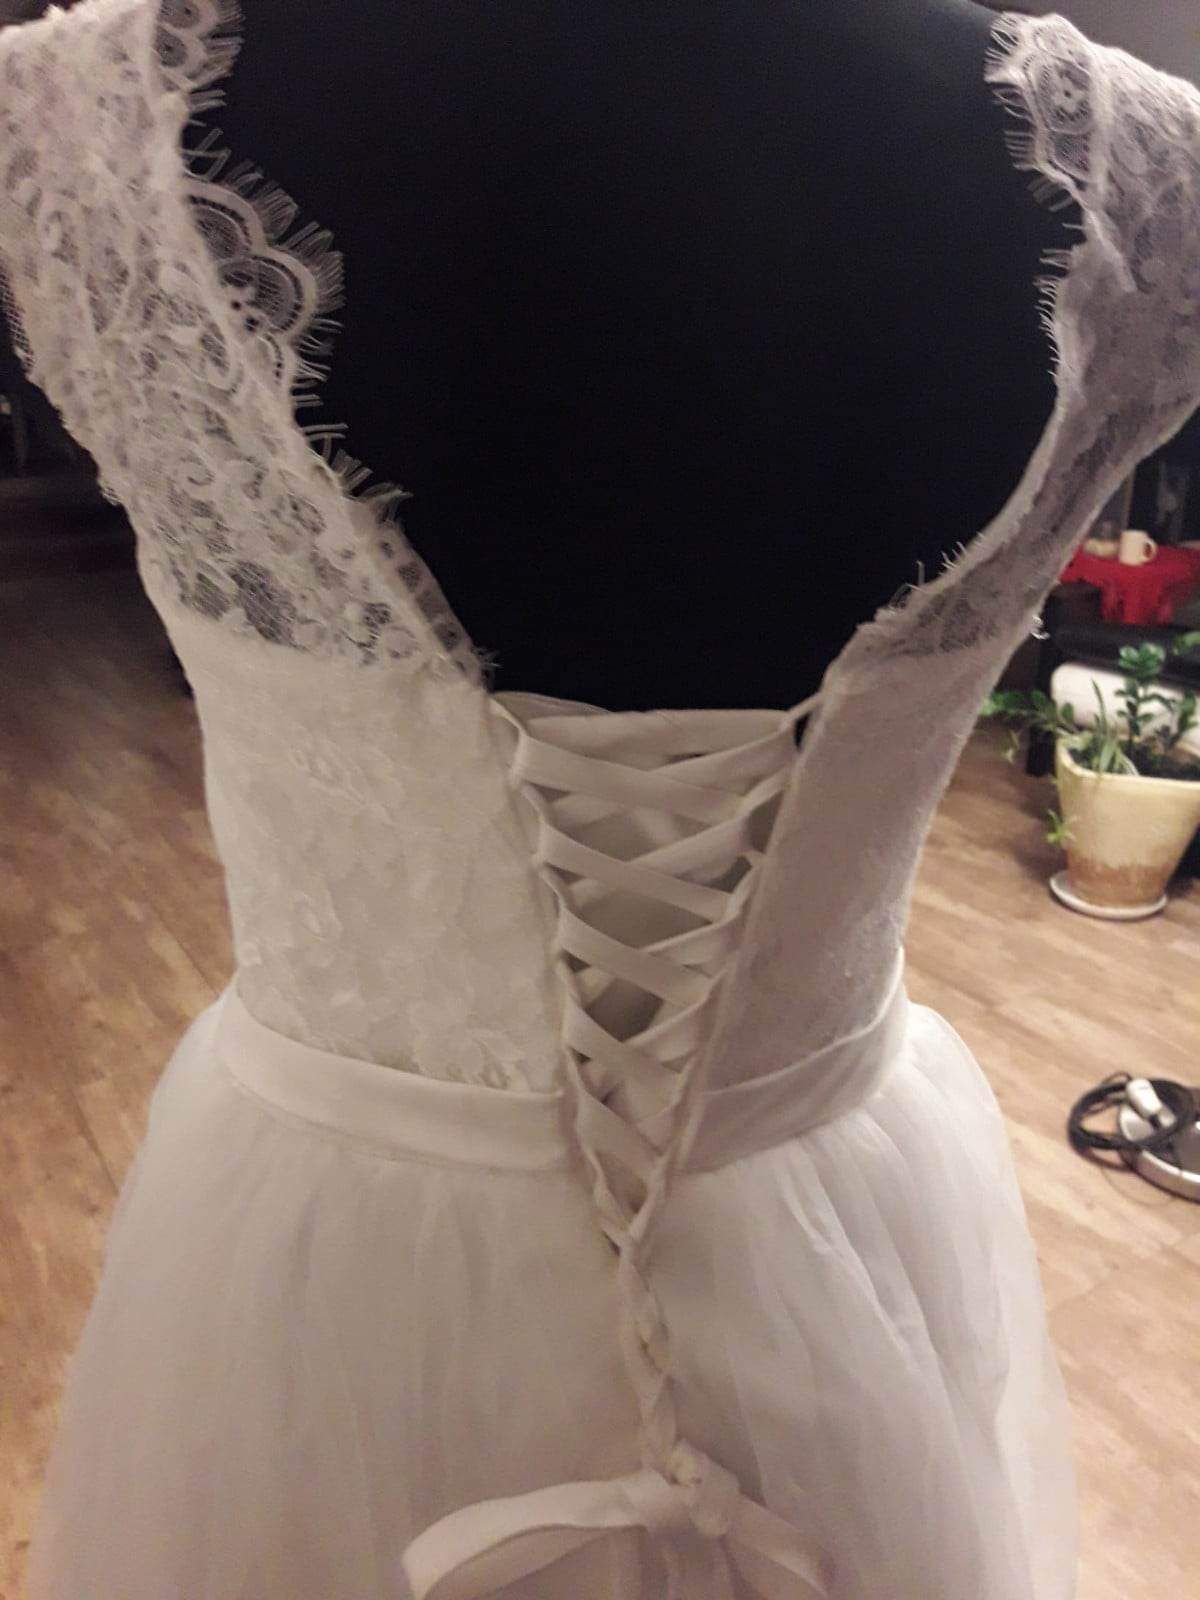 Nowa suknia ślubna